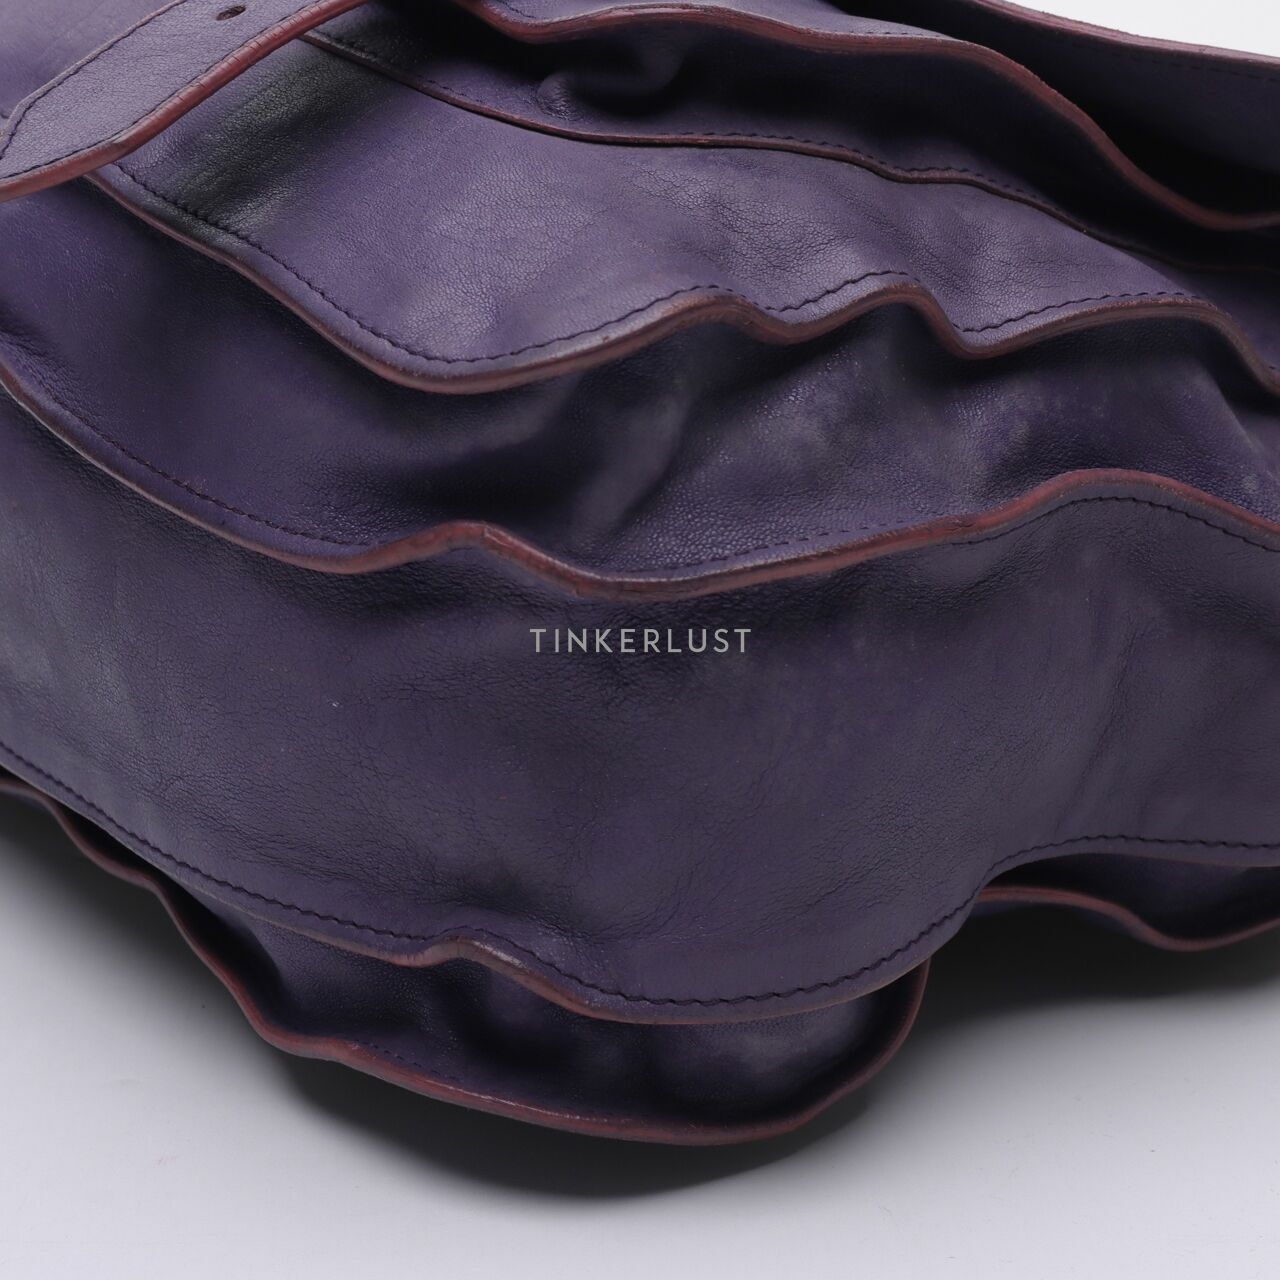 Proenza Schouler PS1 Purple Satchel Bag